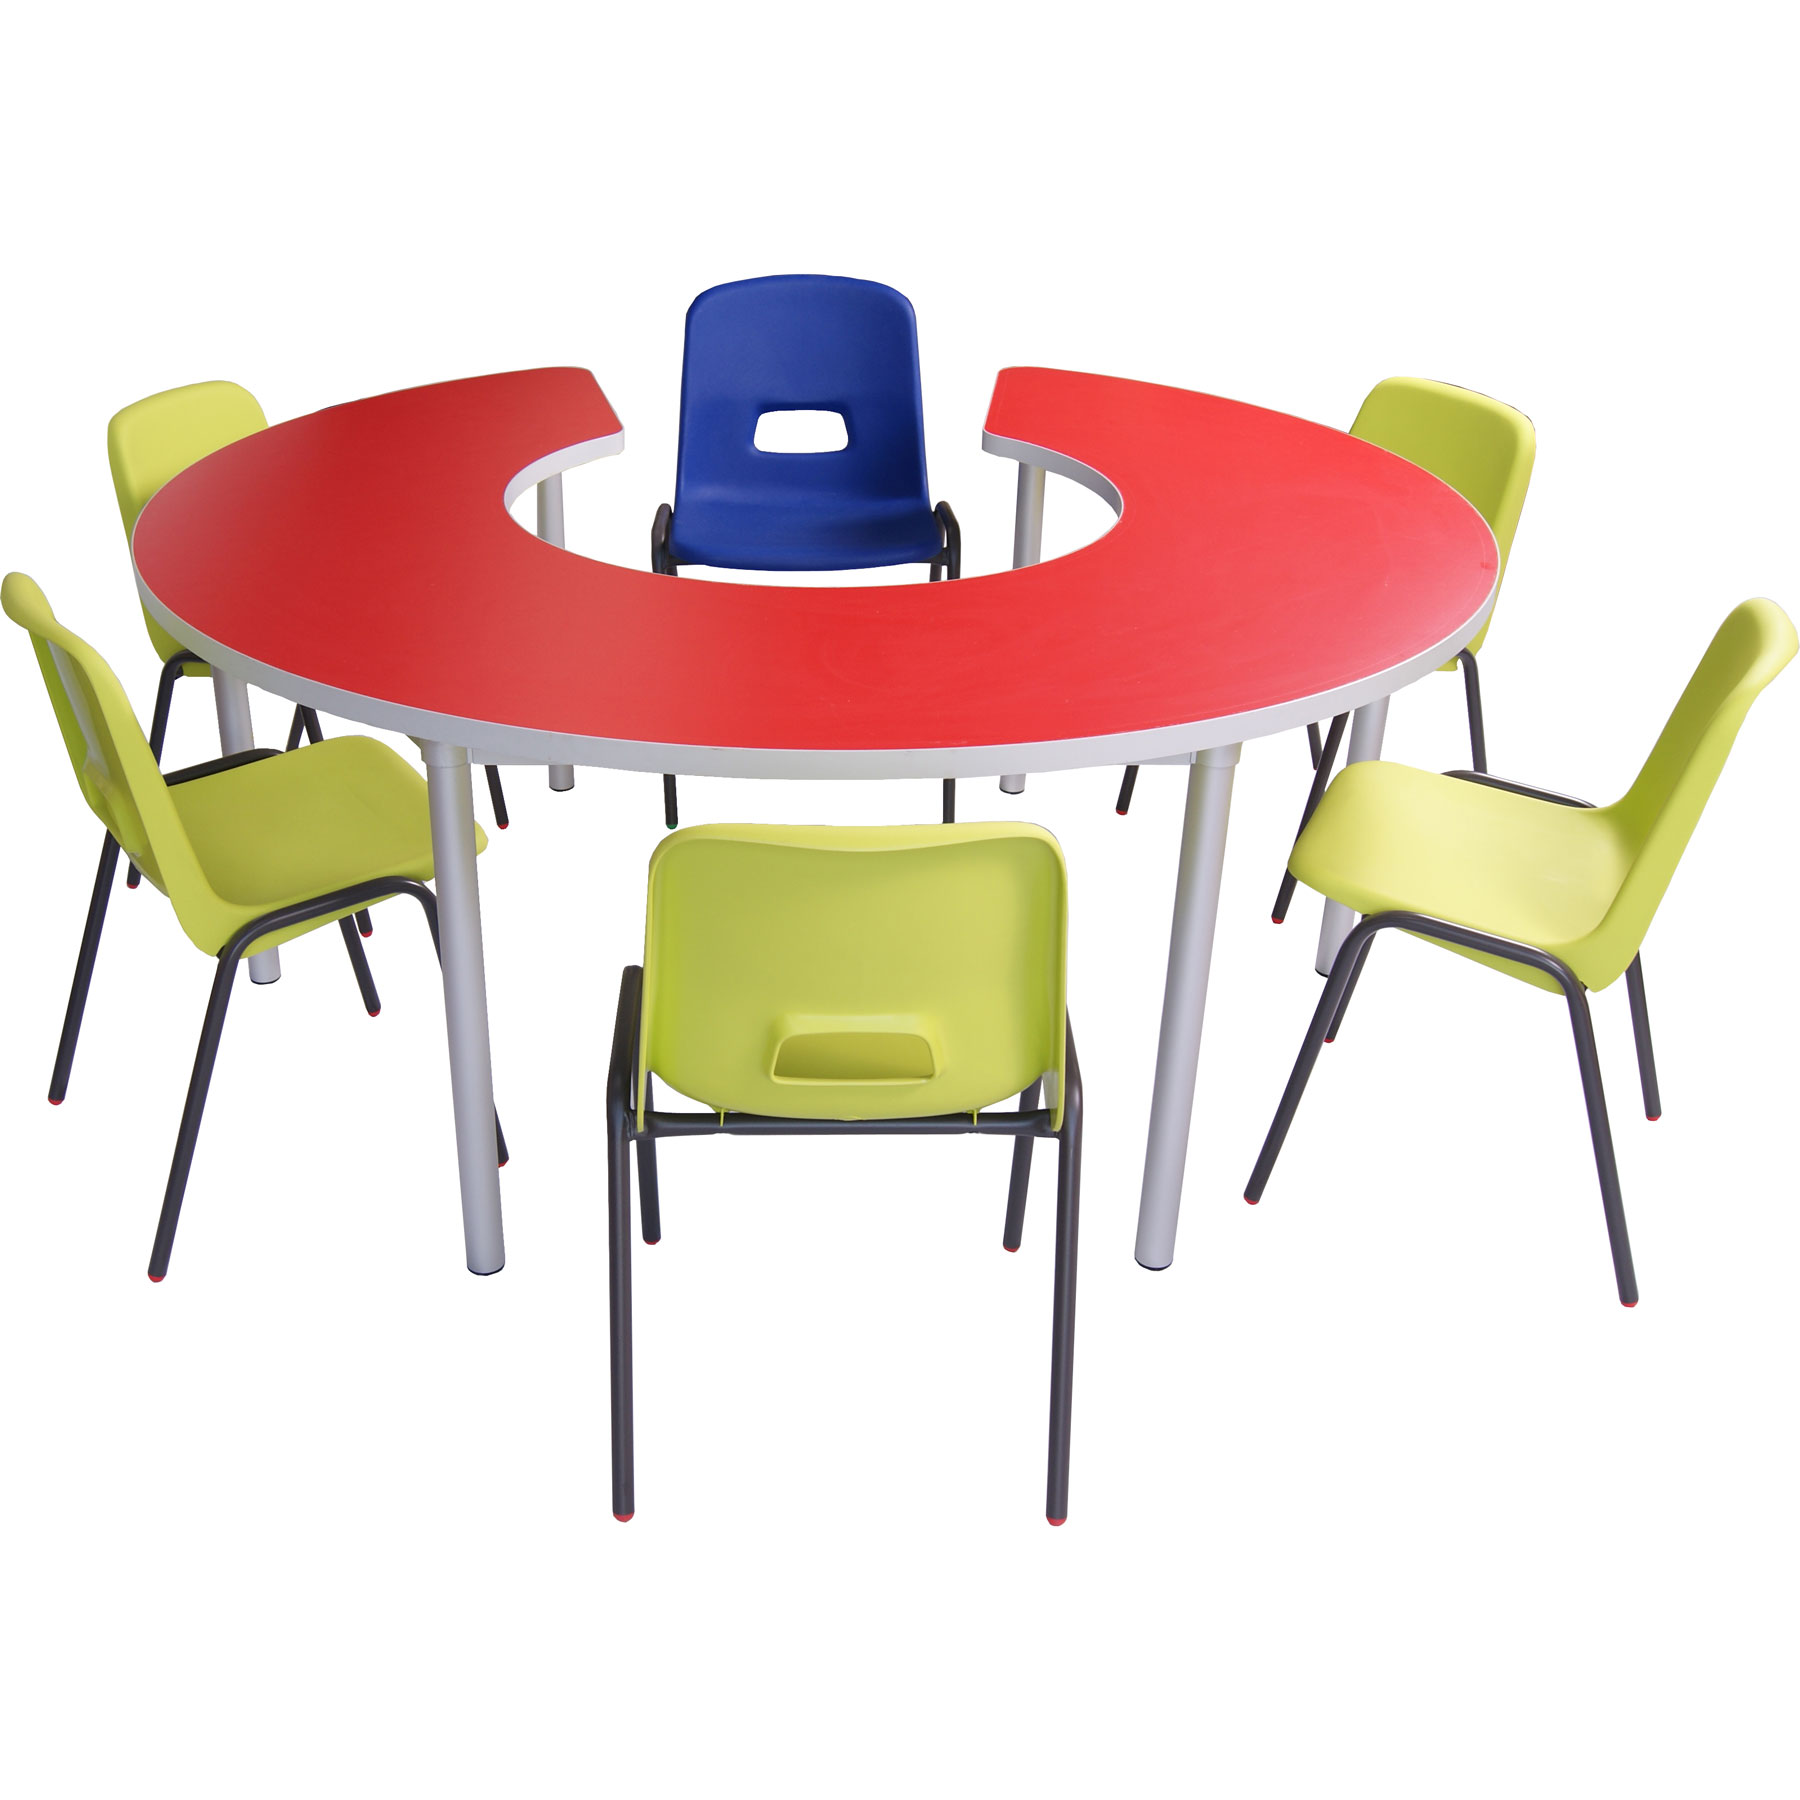 Shapes School Classroom Tables